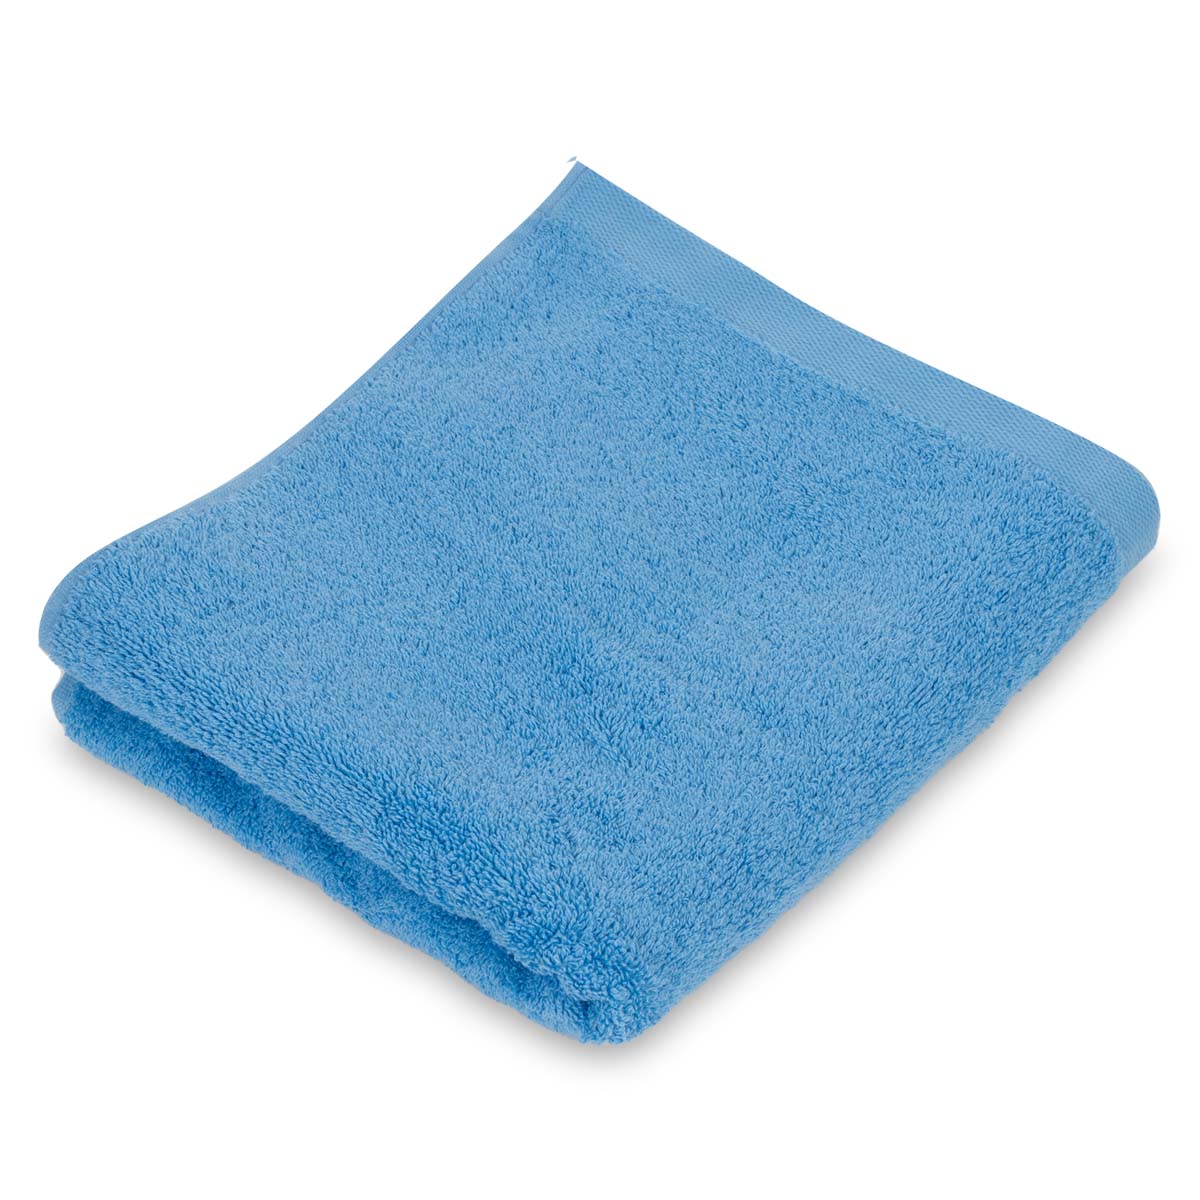 Полотенце махровое Lameirinho Aqua 50x100см, цвет голубой полотенце утро голубой р 100х180